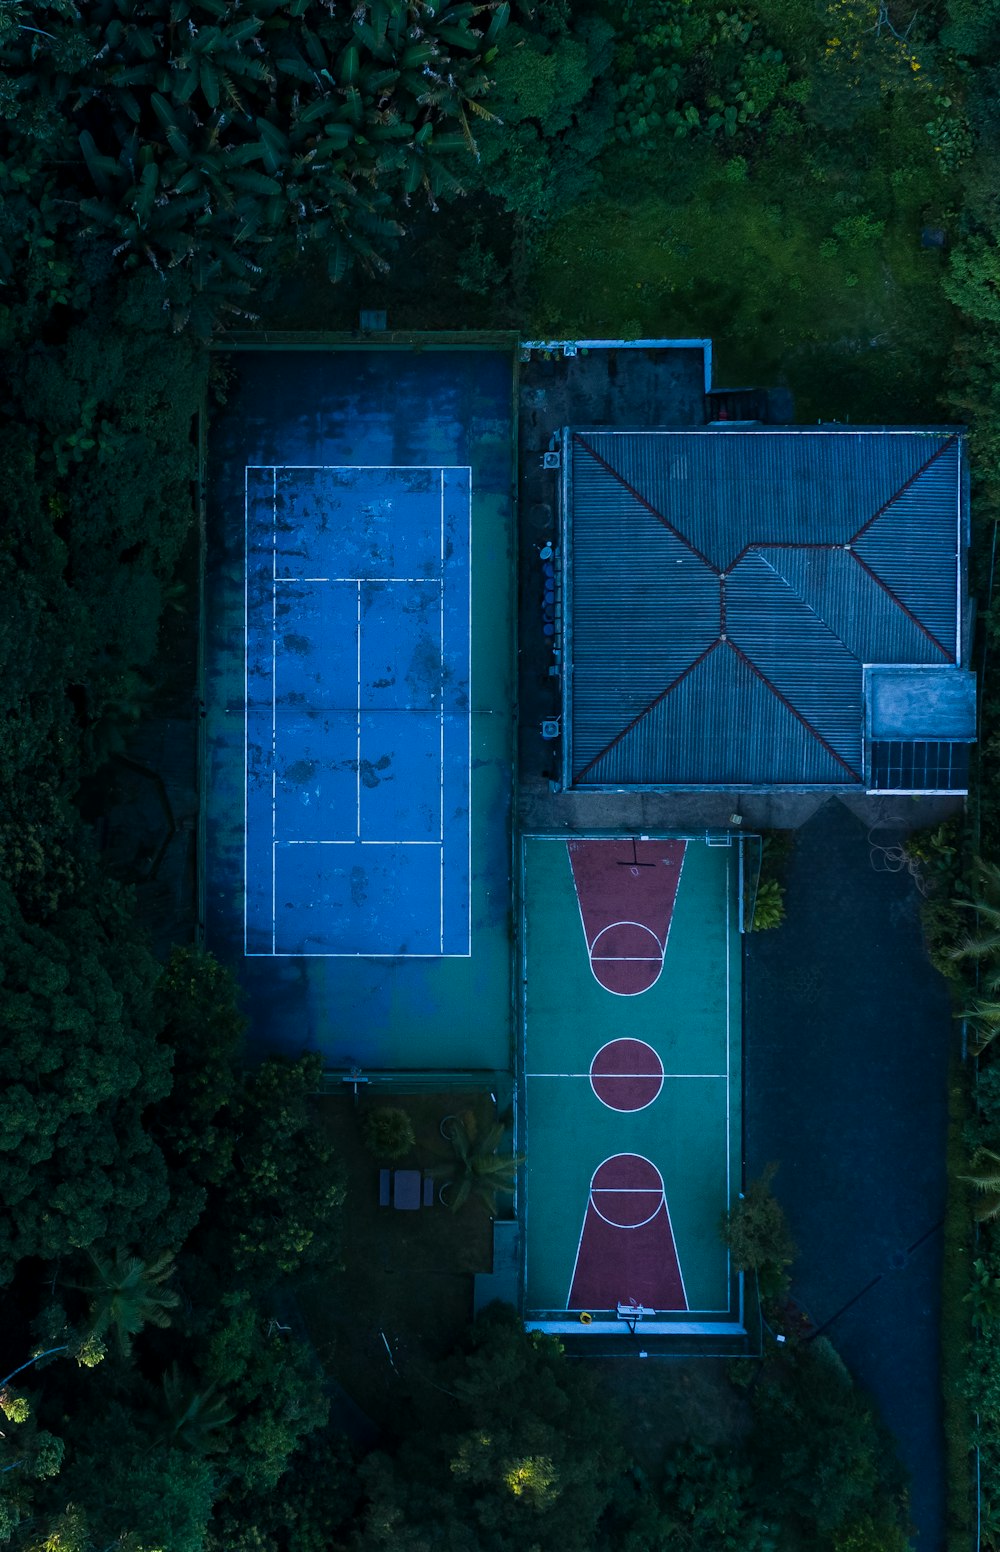 Sportplätze in der Luftbildfotografie